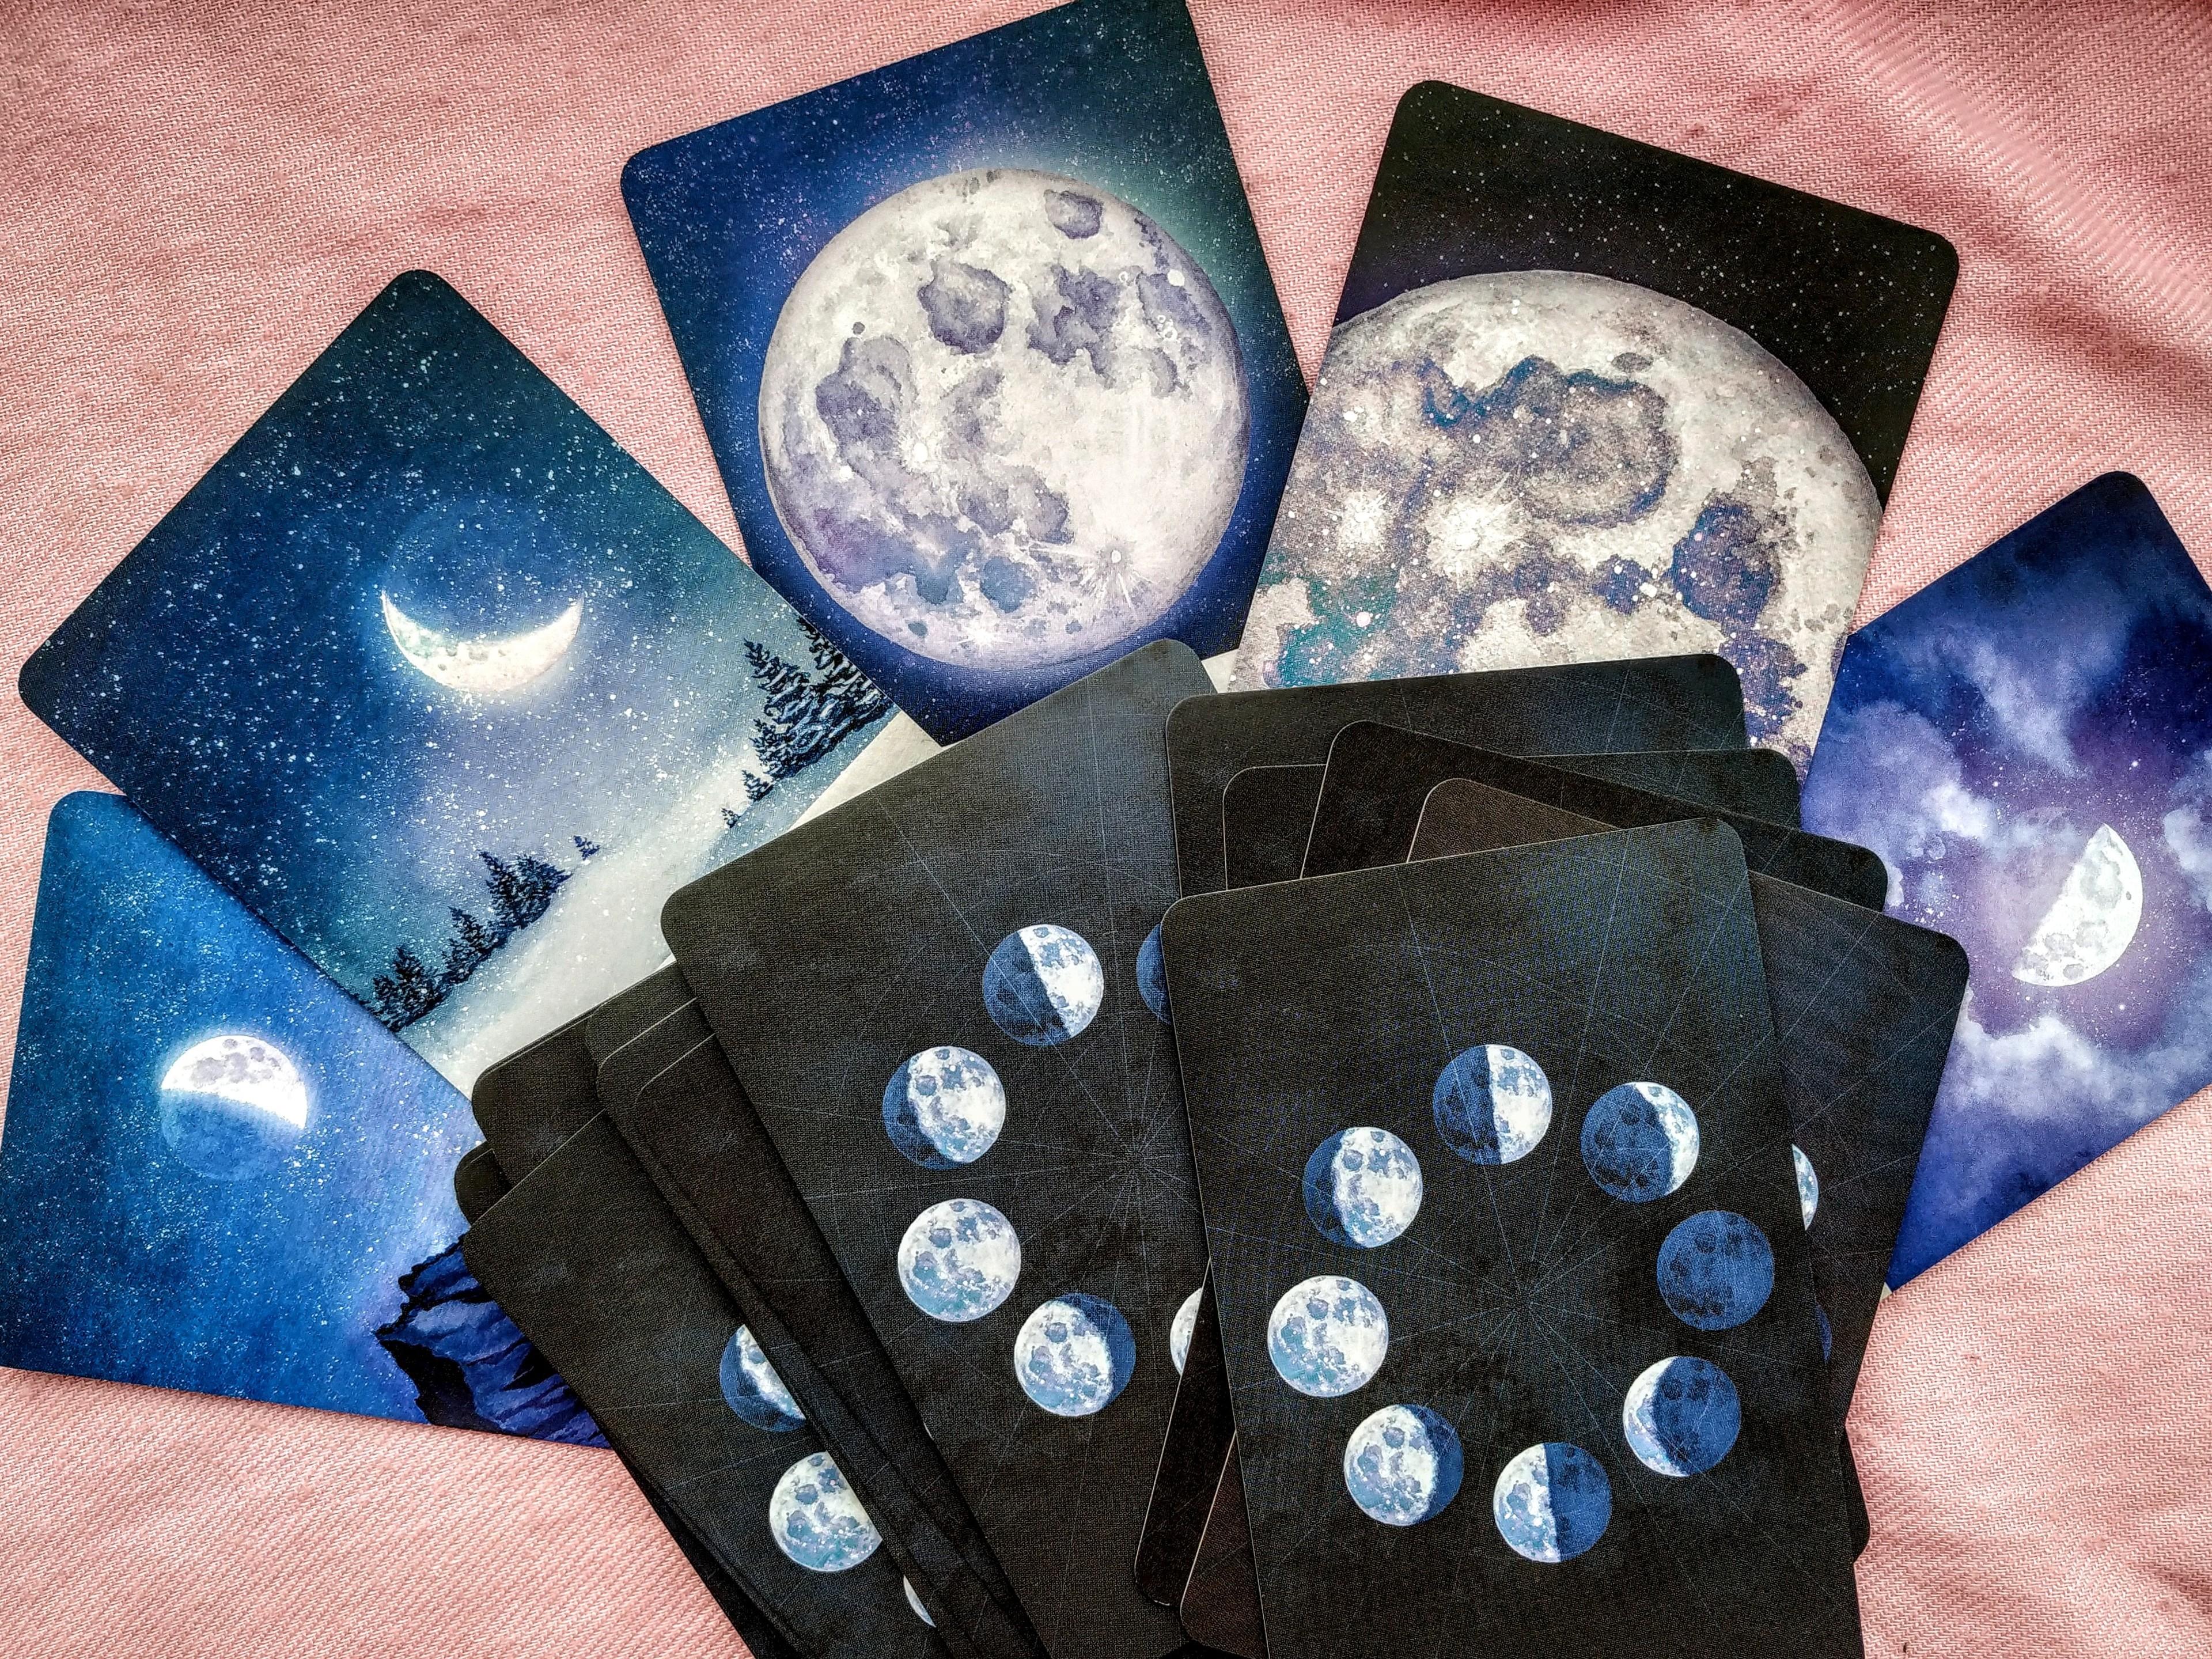 Spielkarten, die den Mond in verschiedenen Phasen abbilden, liegen auf einer Tischdecke